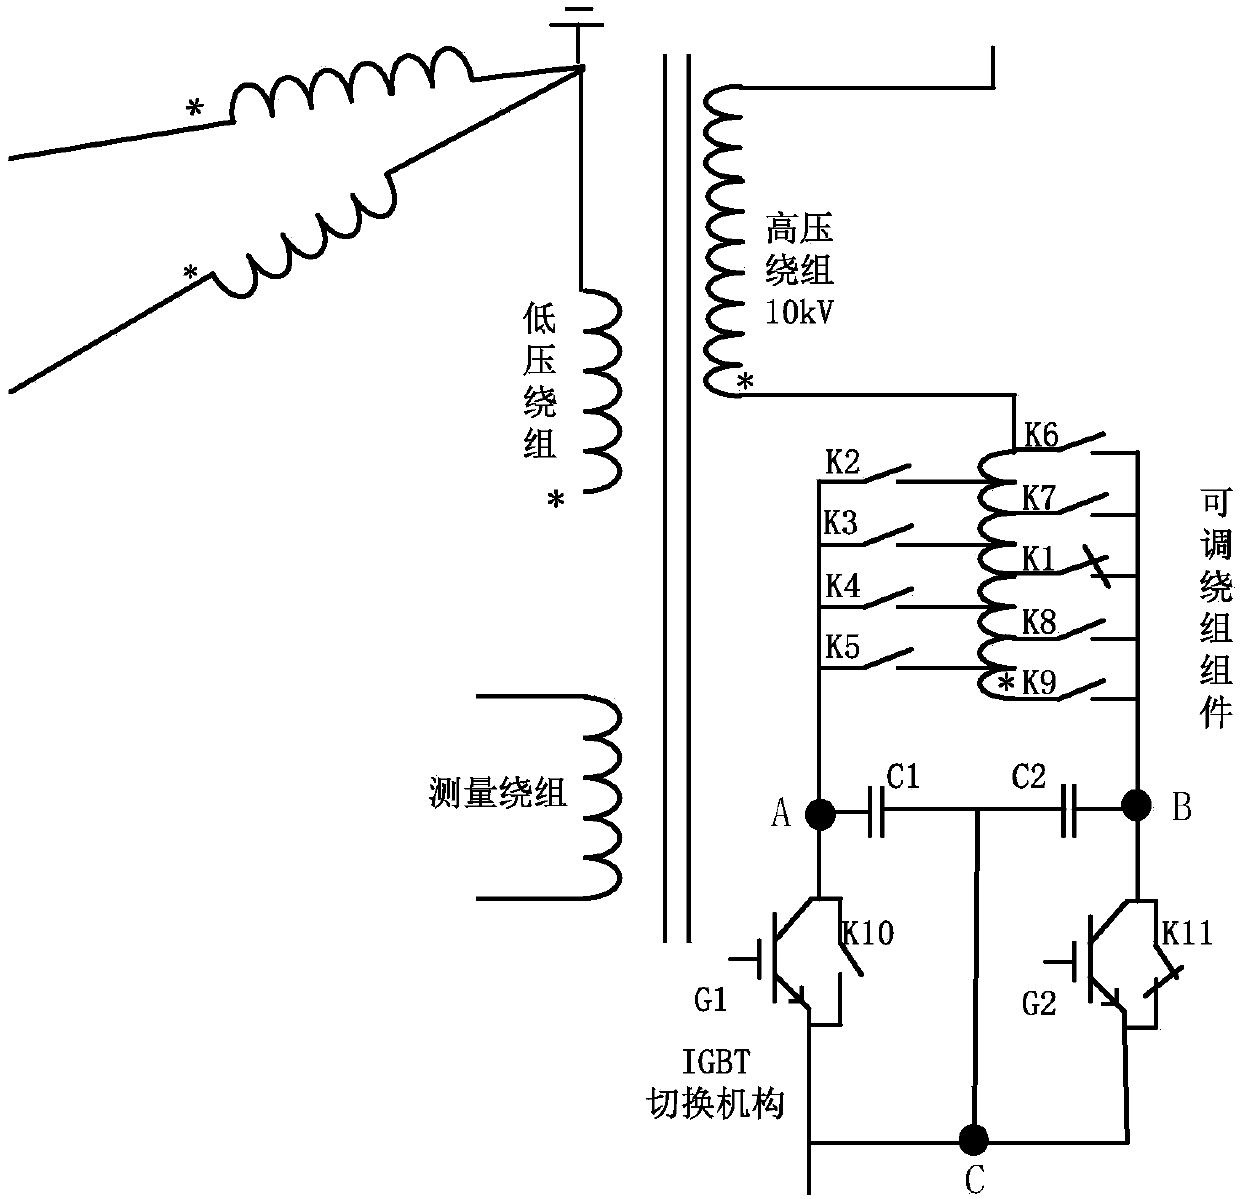 Voltage regulating device of transformer, control method of voltage regulating device and control system based on voltage regulating device